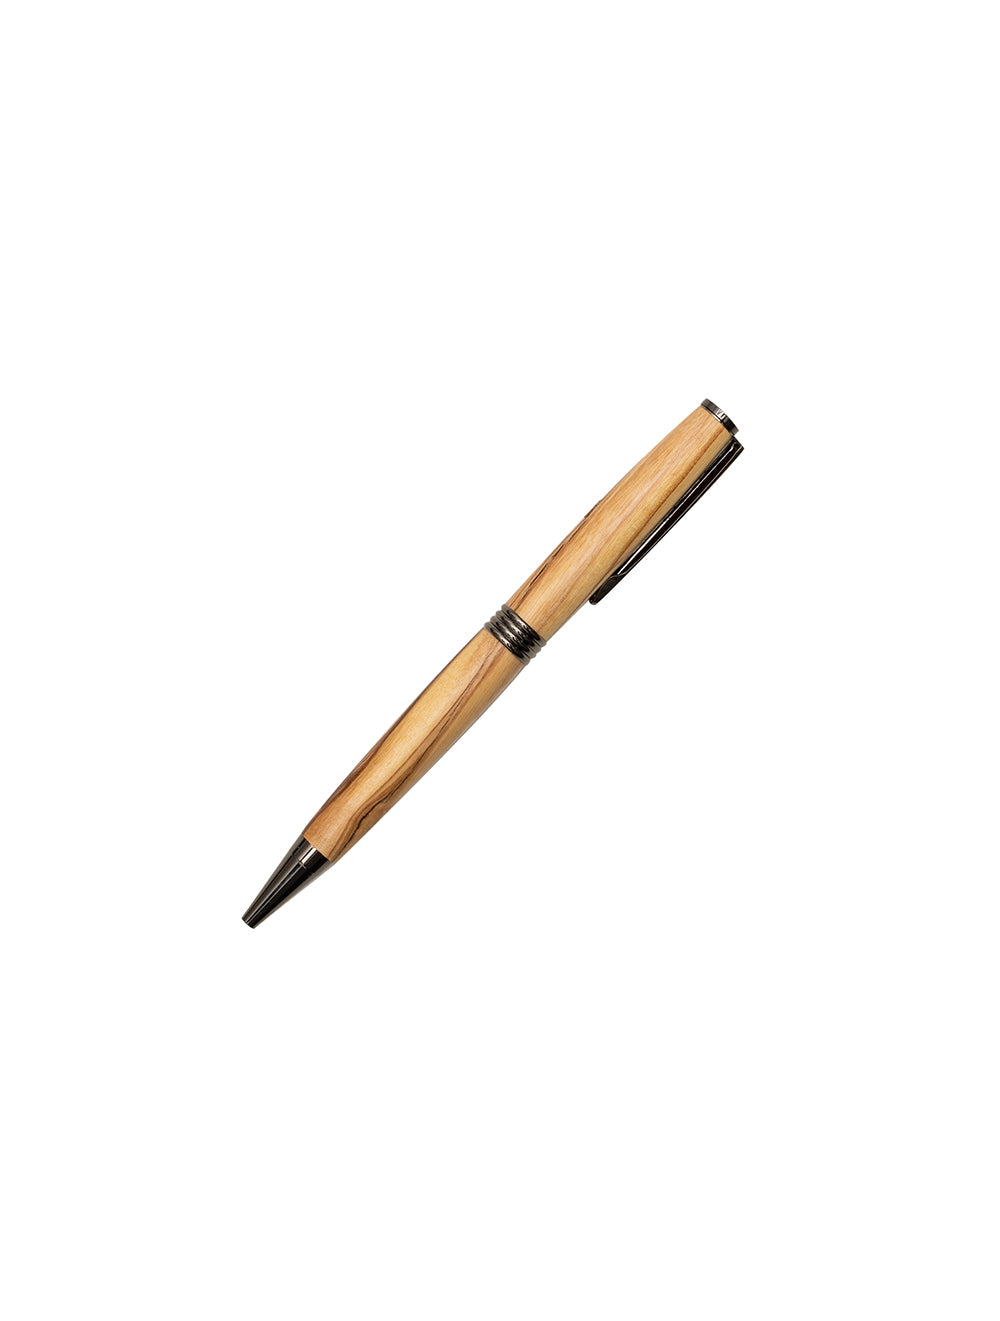 DONEGAL PENS Olive Streamline Pen